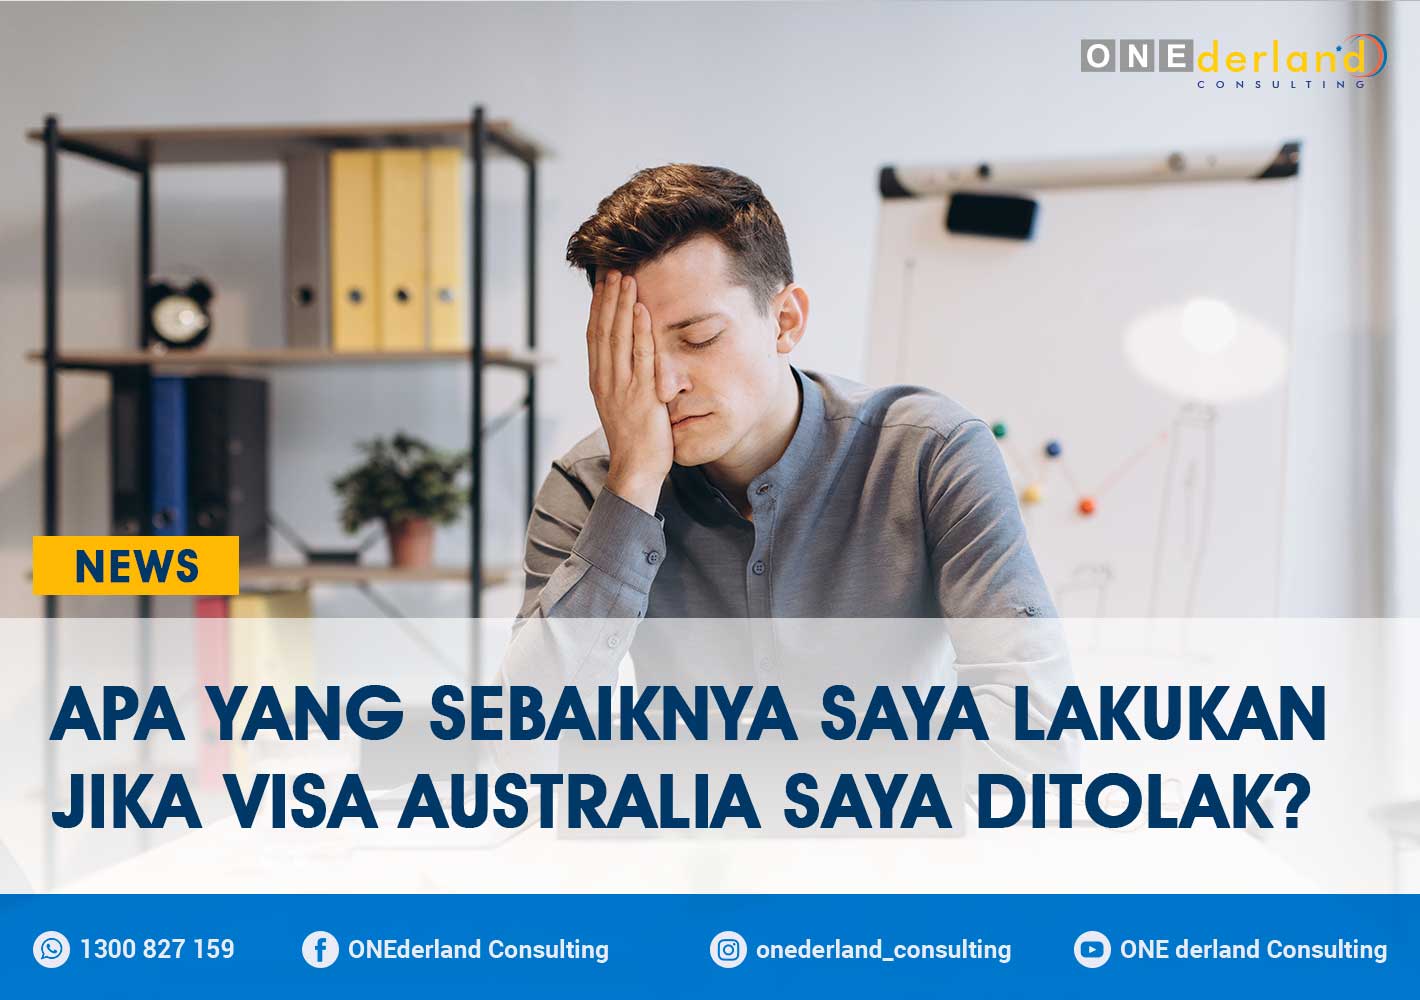 Apa yang Sebaiknya Saya Lakukan Jika Visa Australia Saya Ditolak?